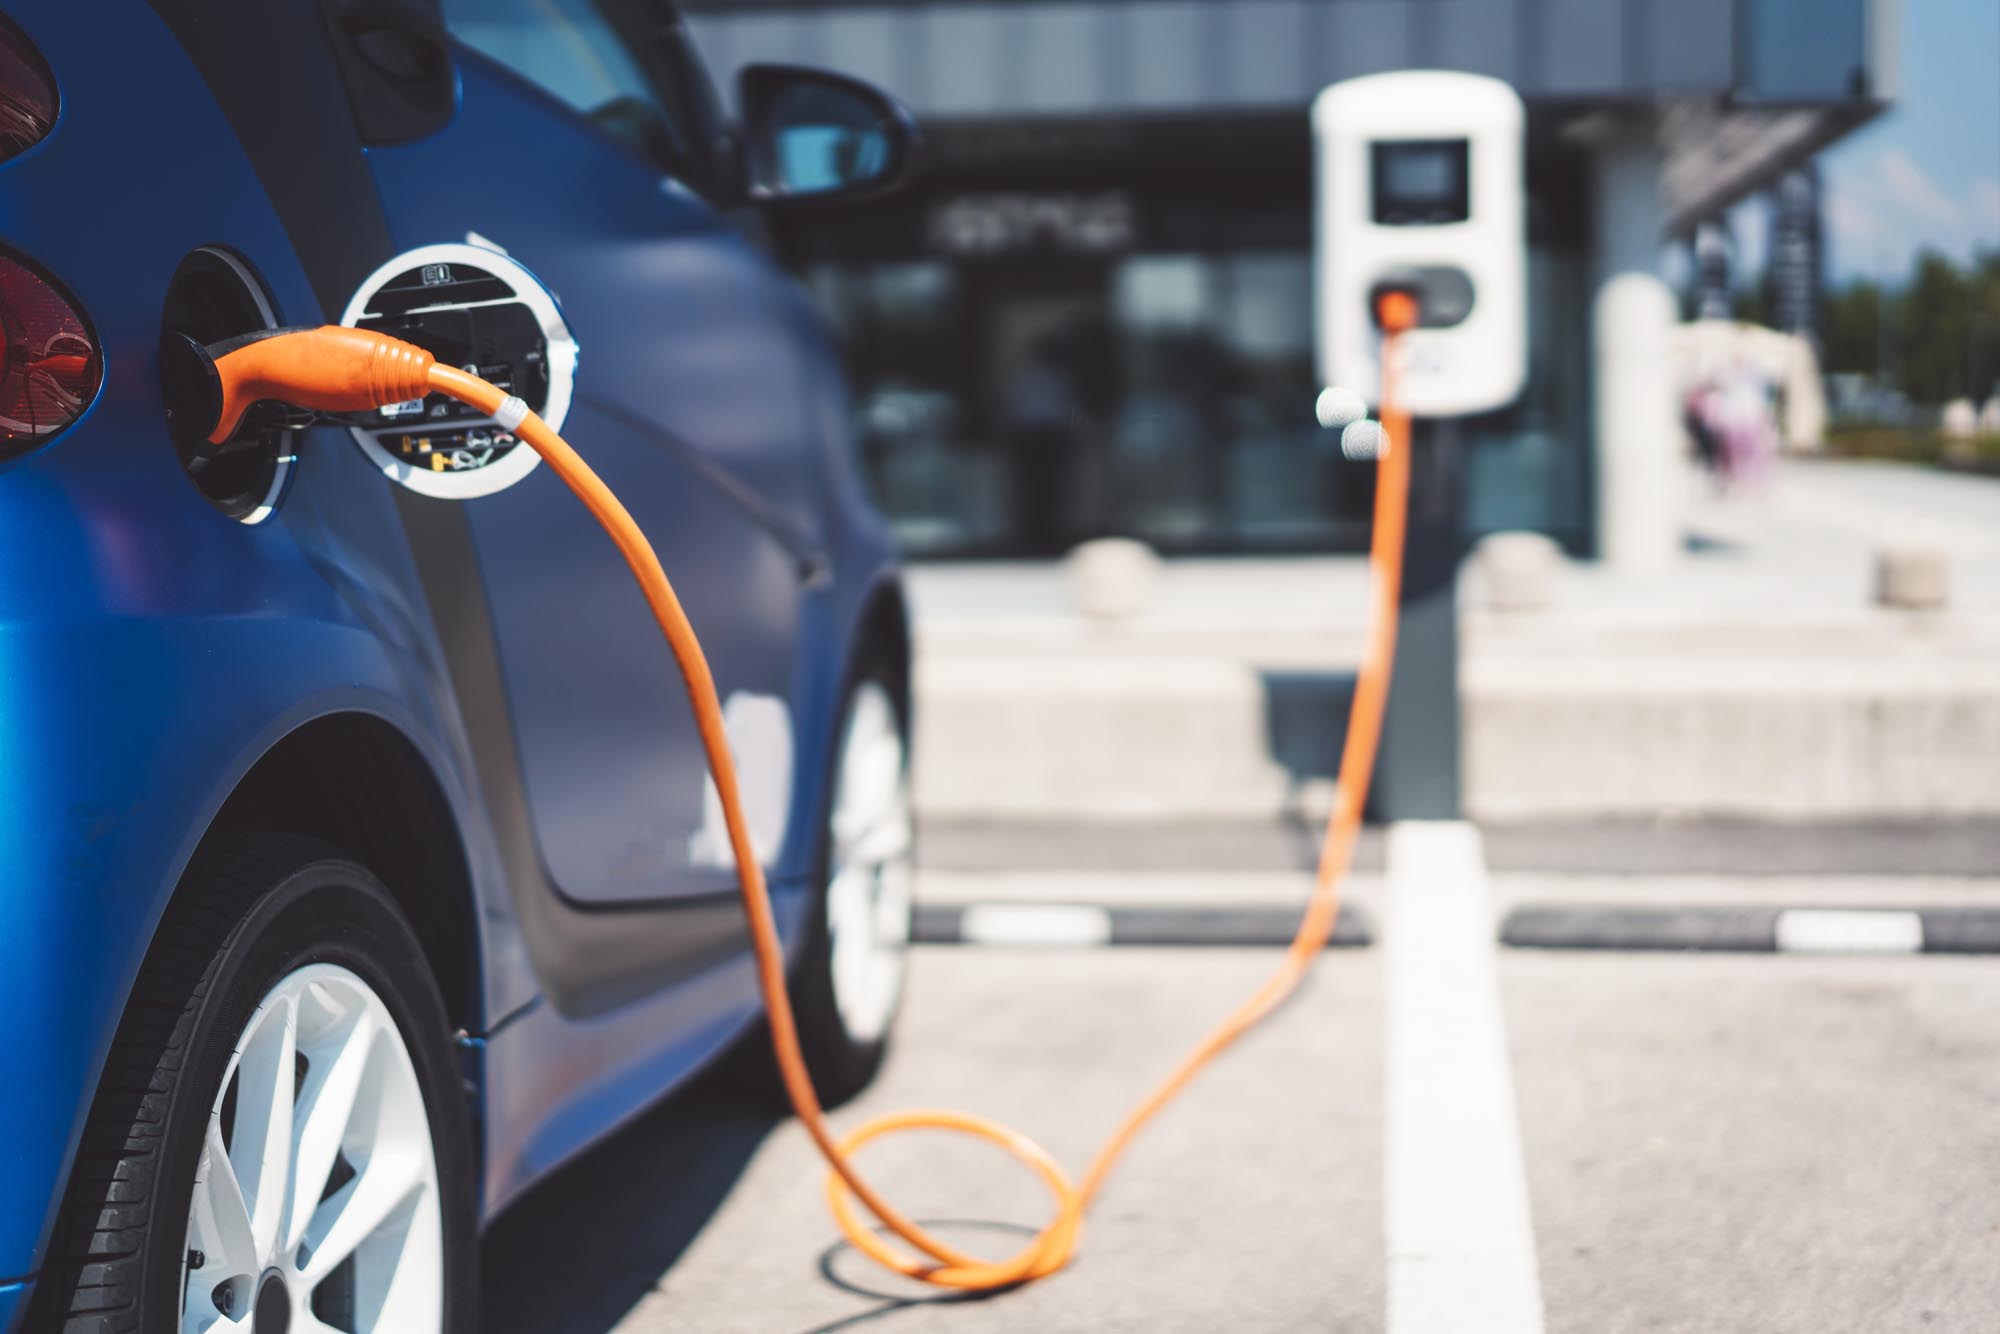 La recharge d'une voiture électrique, comment ça marche ? - Renault Group